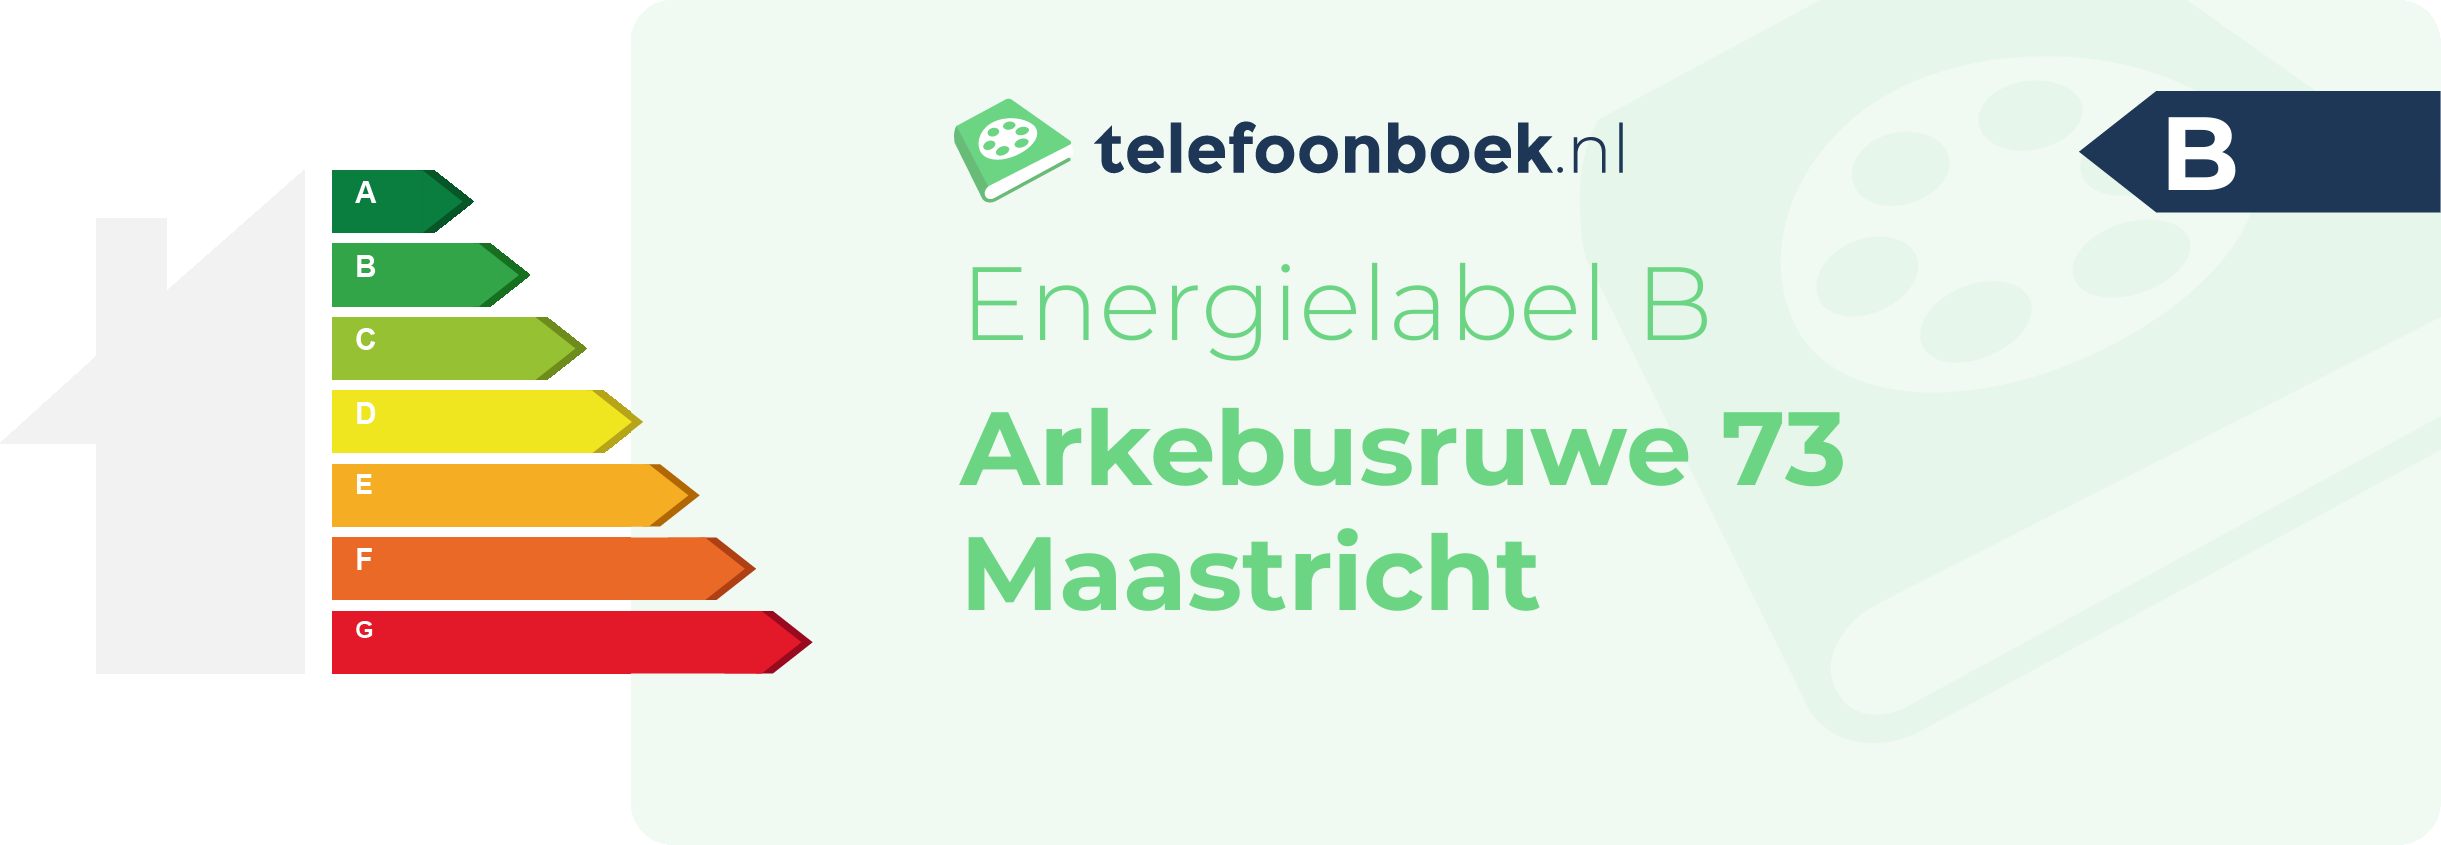 Energielabel Arkebusruwe 73 Maastricht